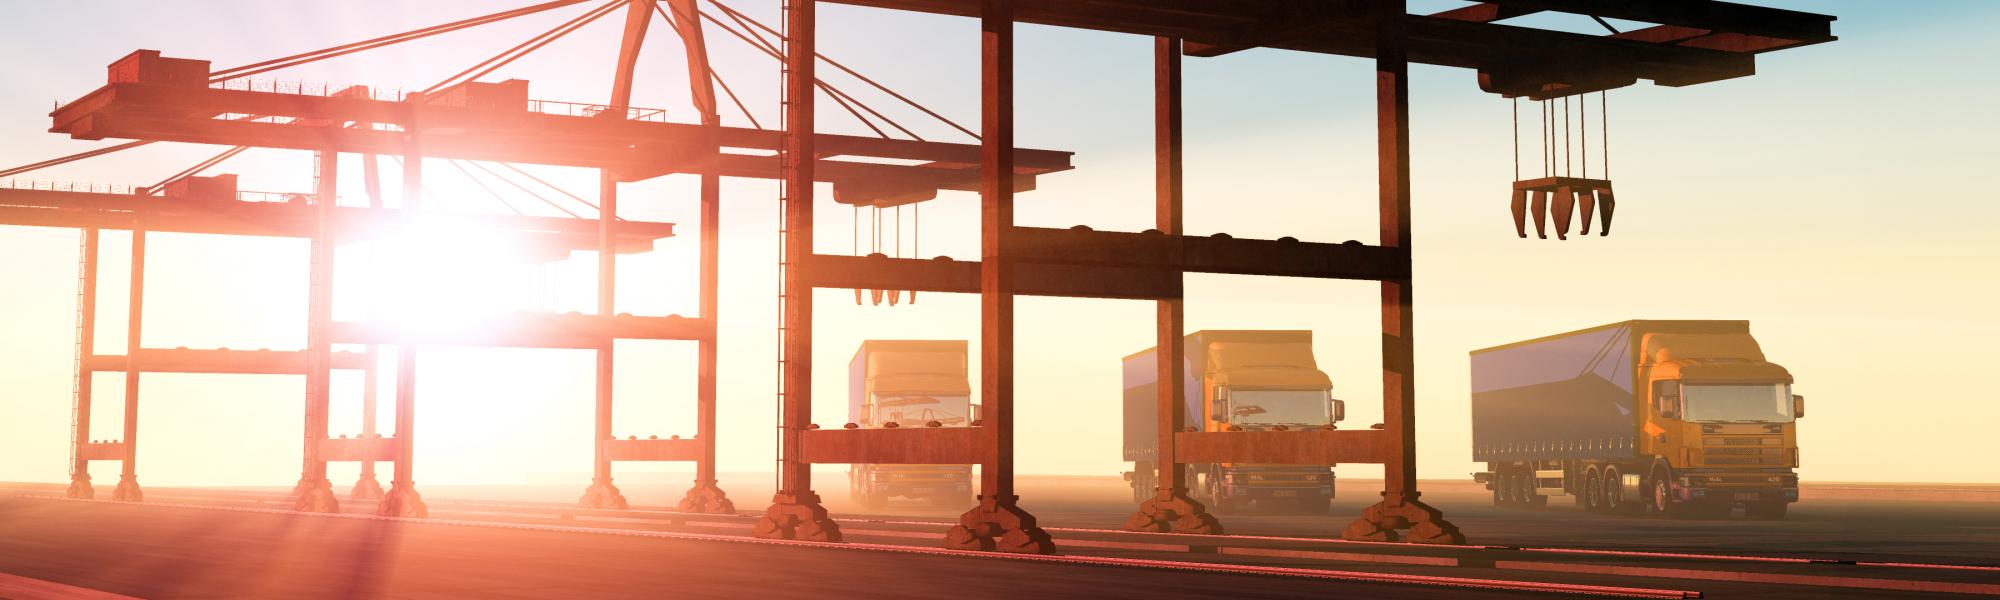 Sea-port, truck, loading goods, multimodal